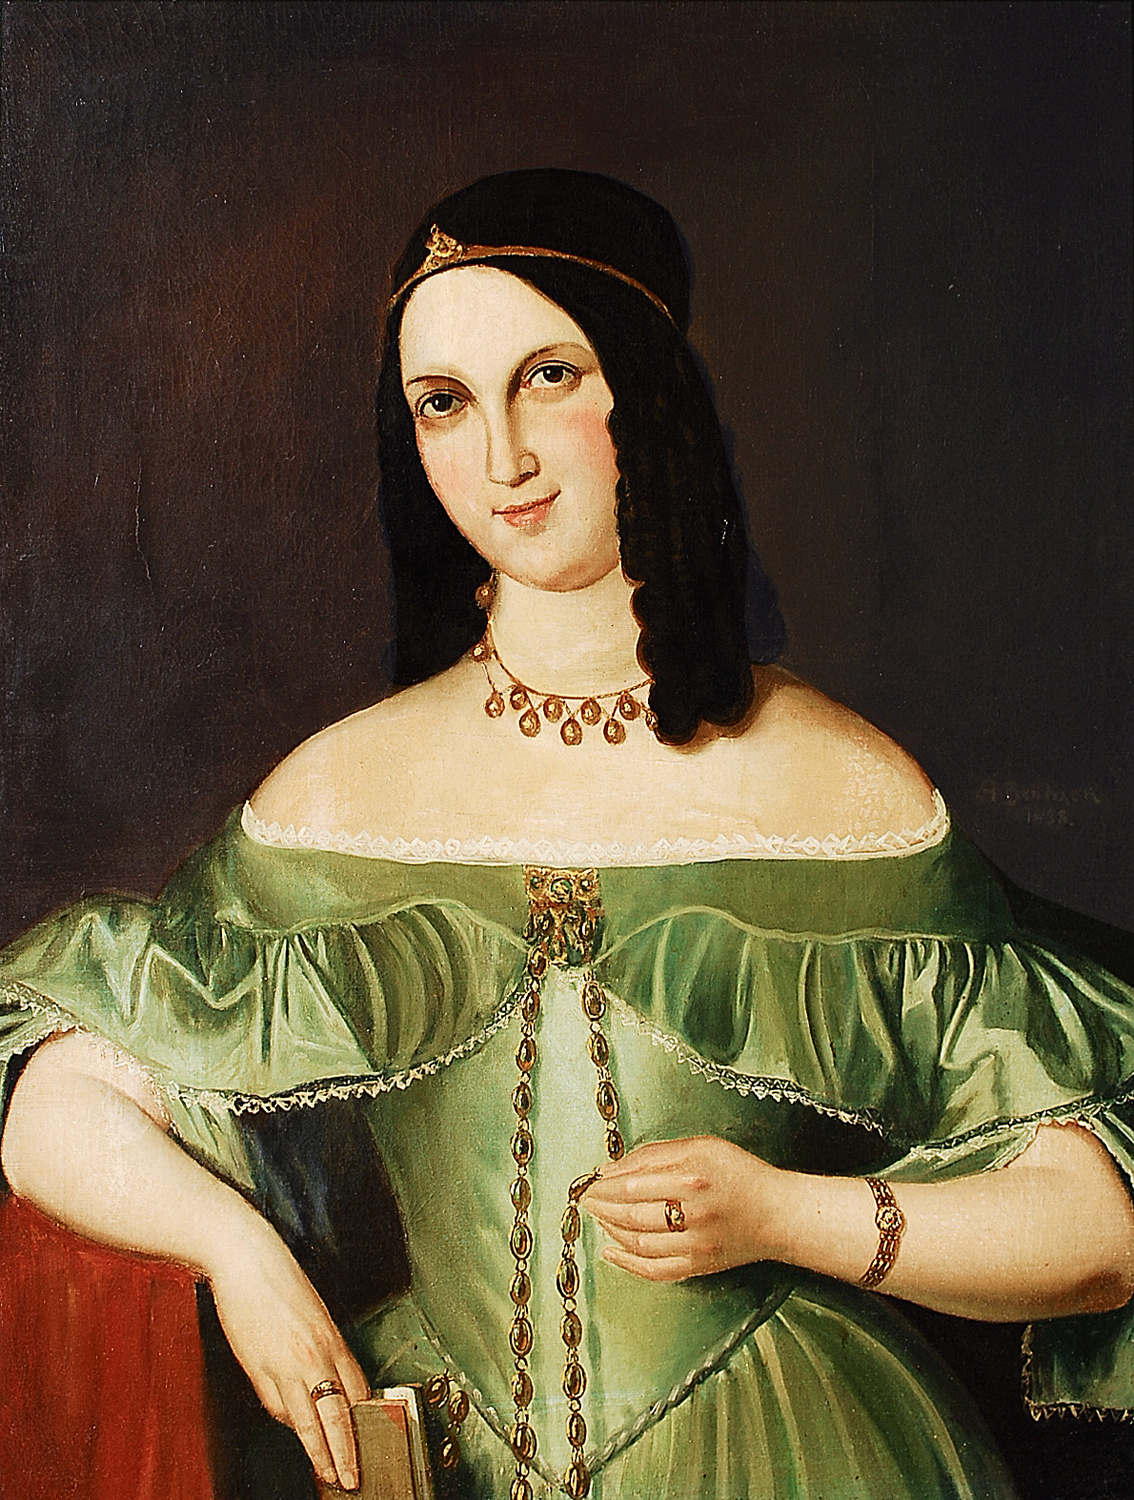 A Biedermeier portrait of a young lady